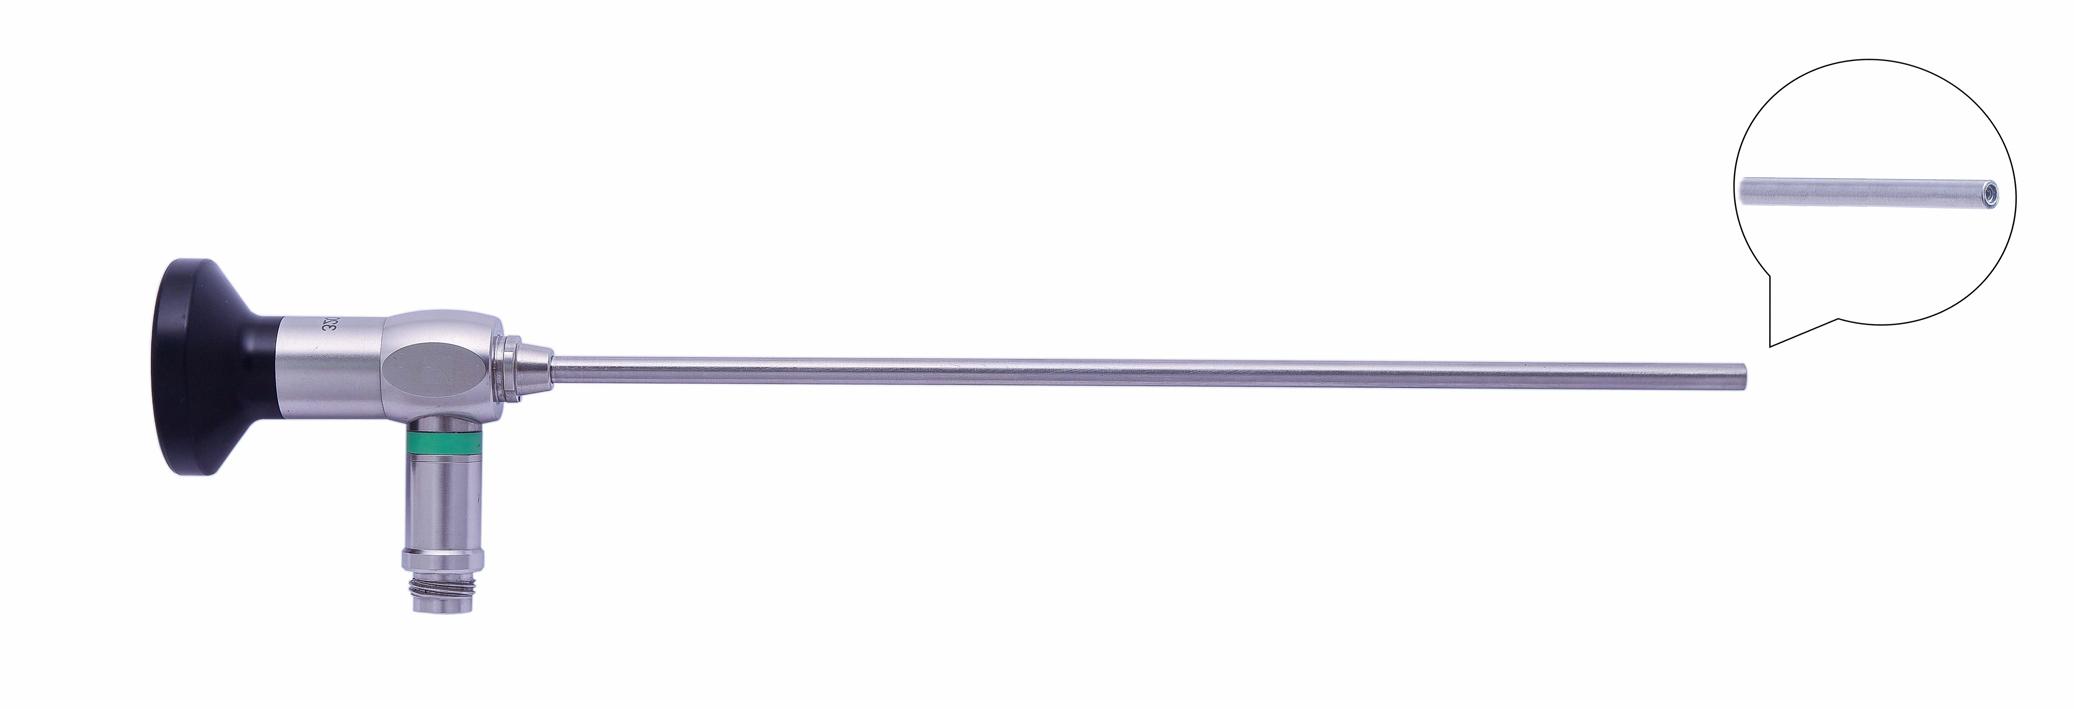 Трубка оптическая (артроскопическая, риноскопическая) ТОАР-003 диам. 2.7 мм, с углом наблюдения 0 гр.